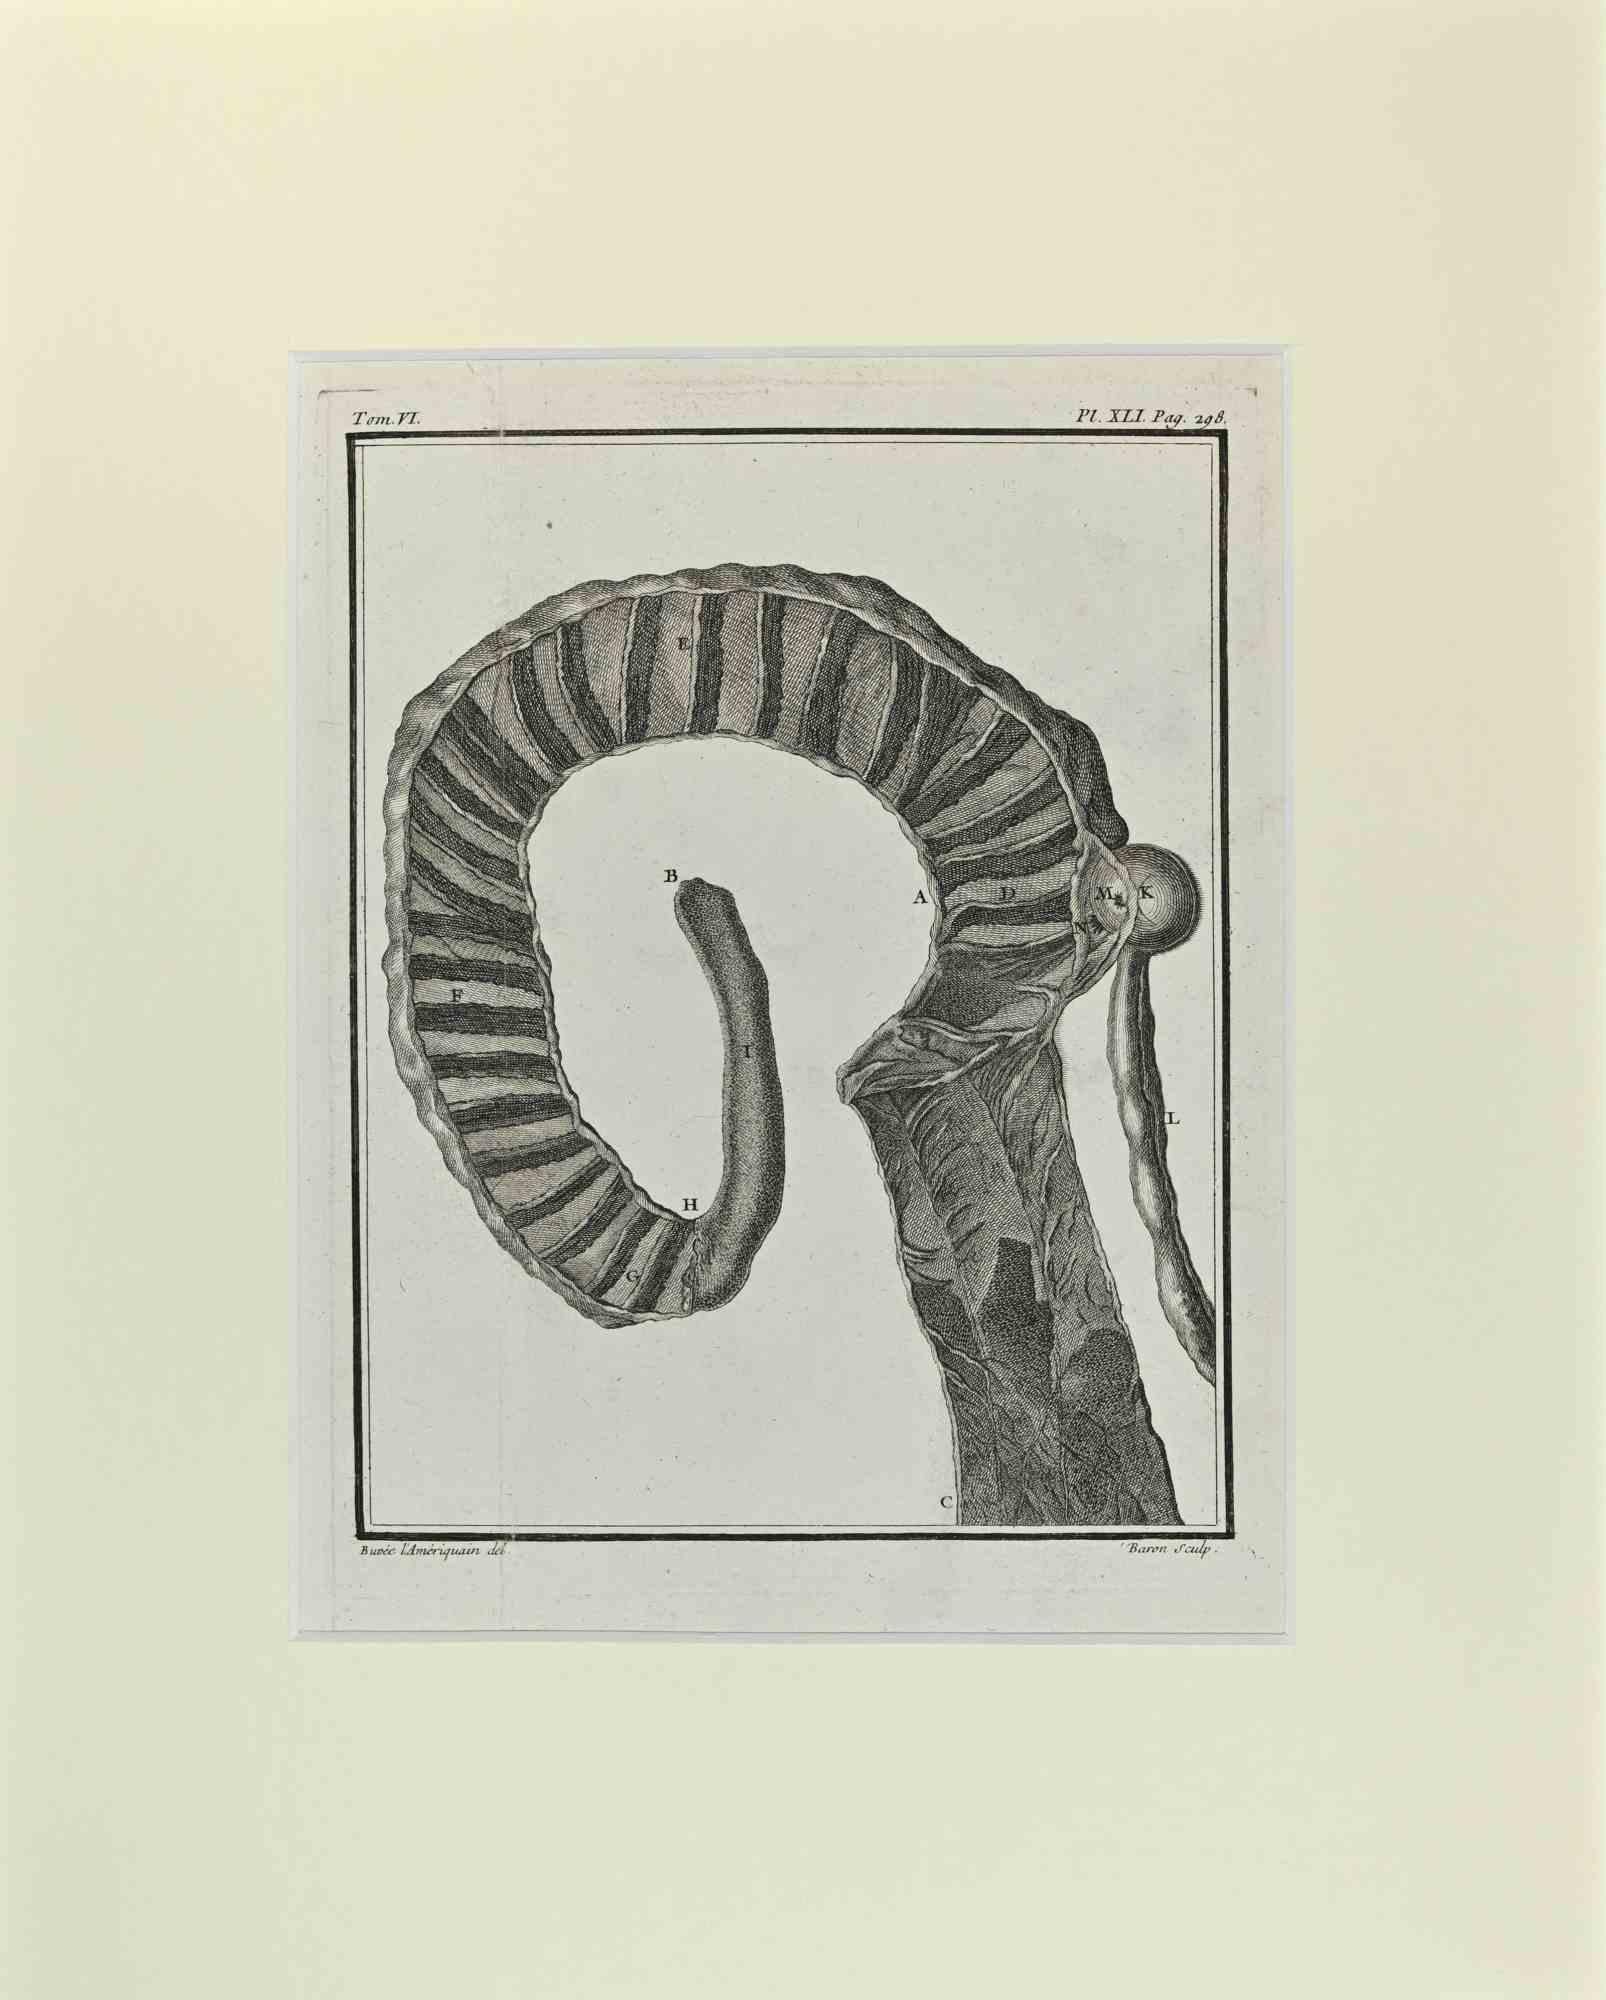 Hornskeleton est une œuvre d'art réalisée par Buvée l'Américain en 1771.  

Gravure à l'eau-forte B./W. sur papier ivoire. Signé sur la plaque dans la marge inférieure gauche.

L'œuvre est collée sur du carton. Dimensions totales : 35x28